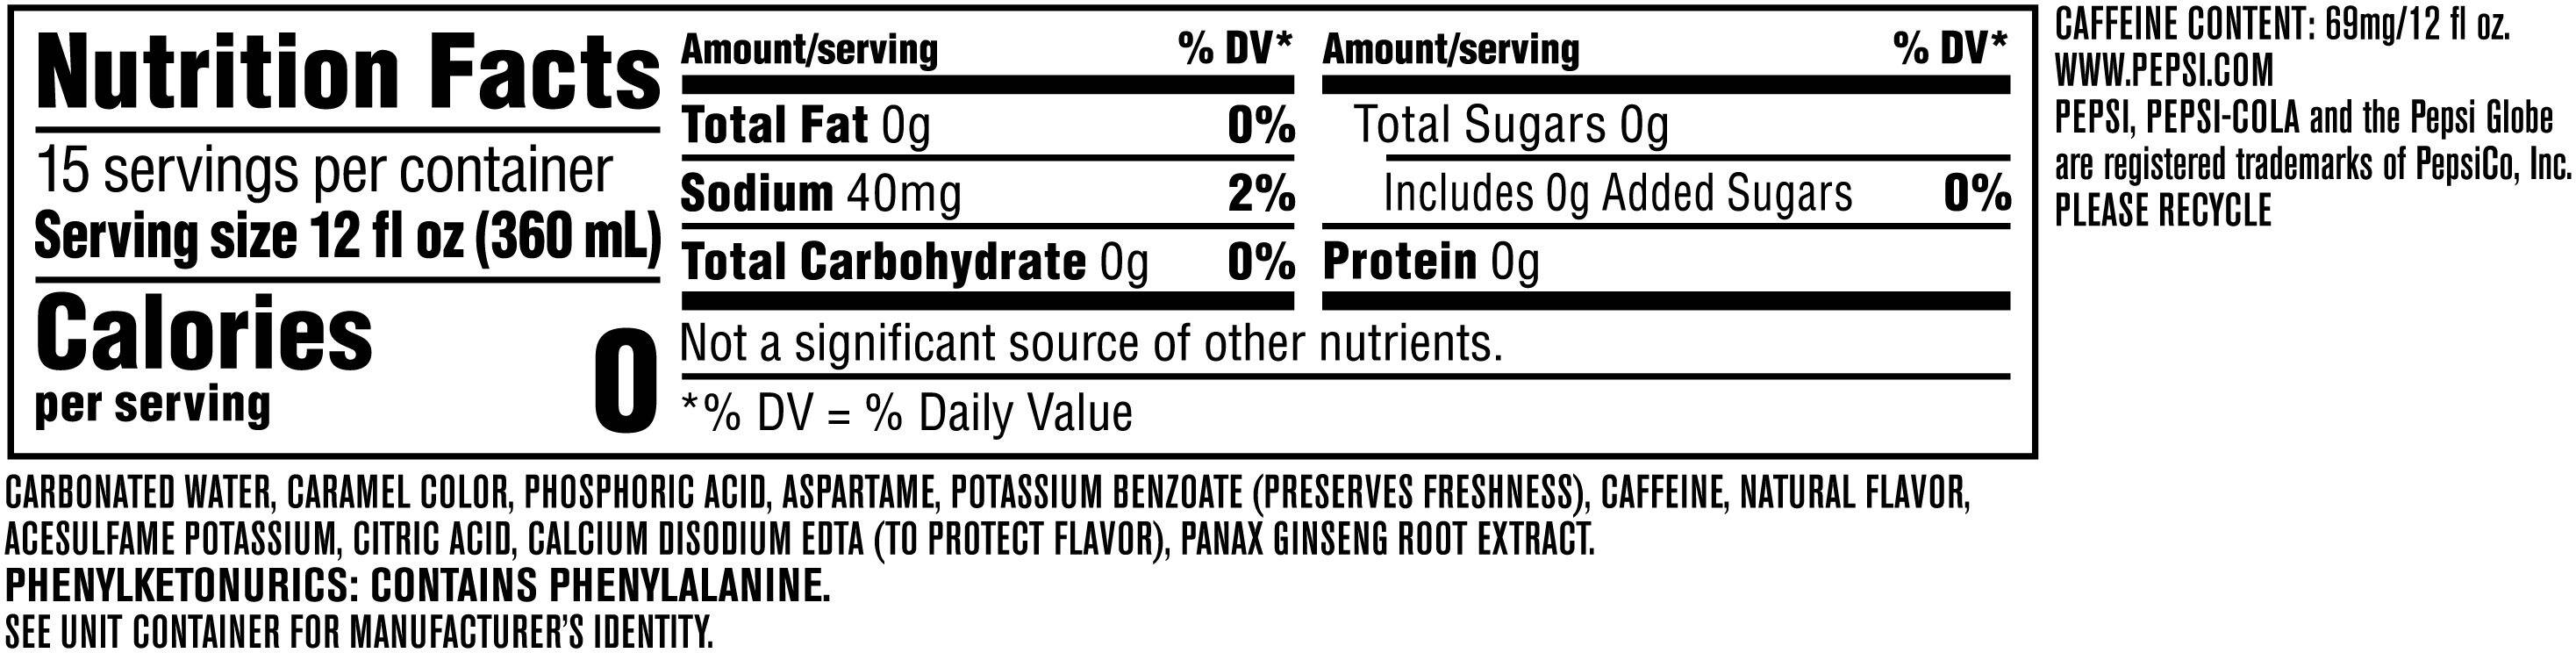 Image describing nutrition information for product  Pepsi Zero Sugar